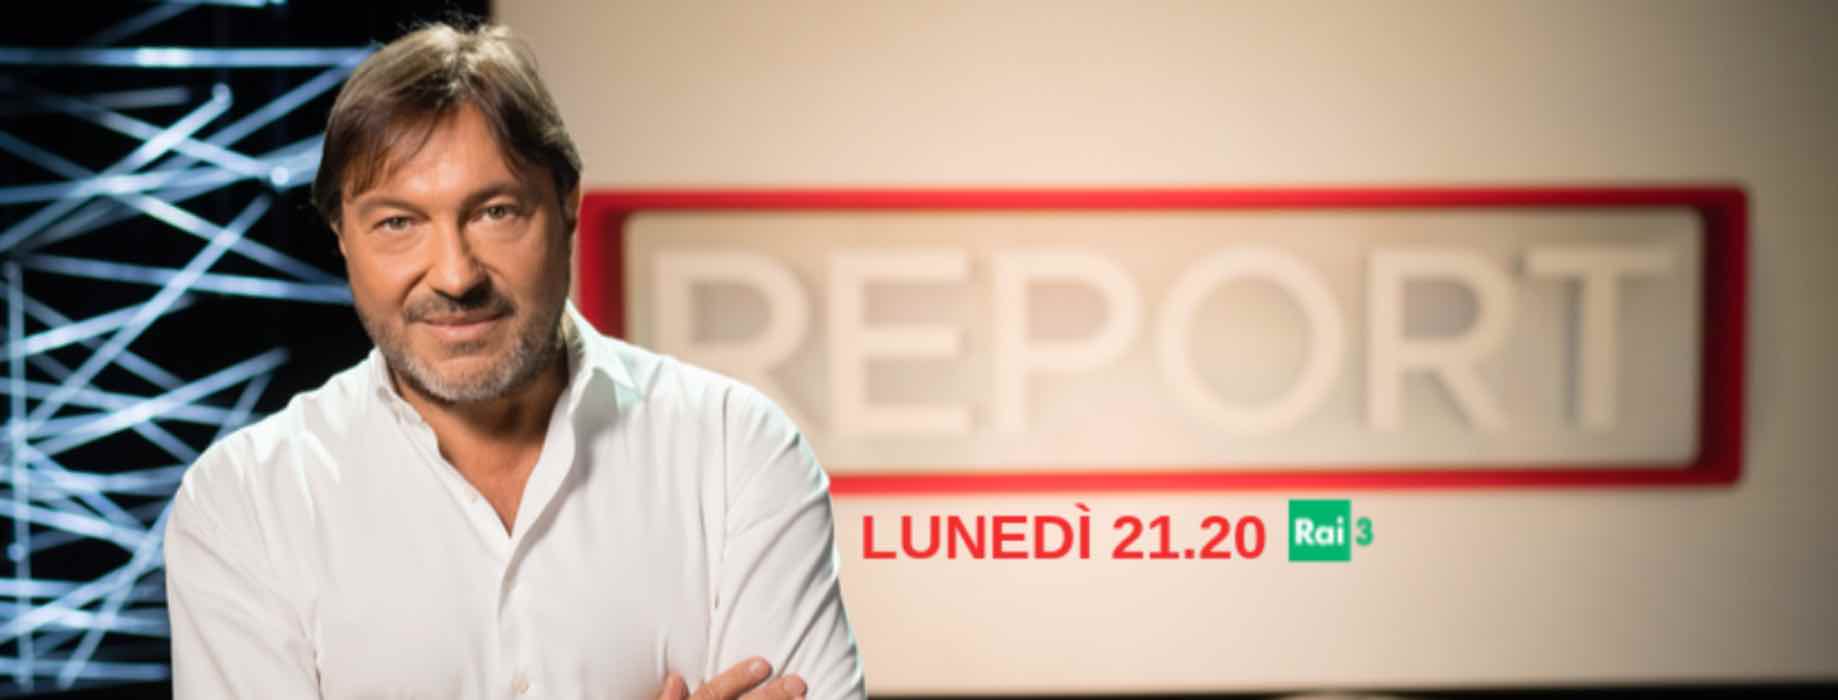 Report, l'intervista al premier Giuseppe Conte sul 5G - VIDEO